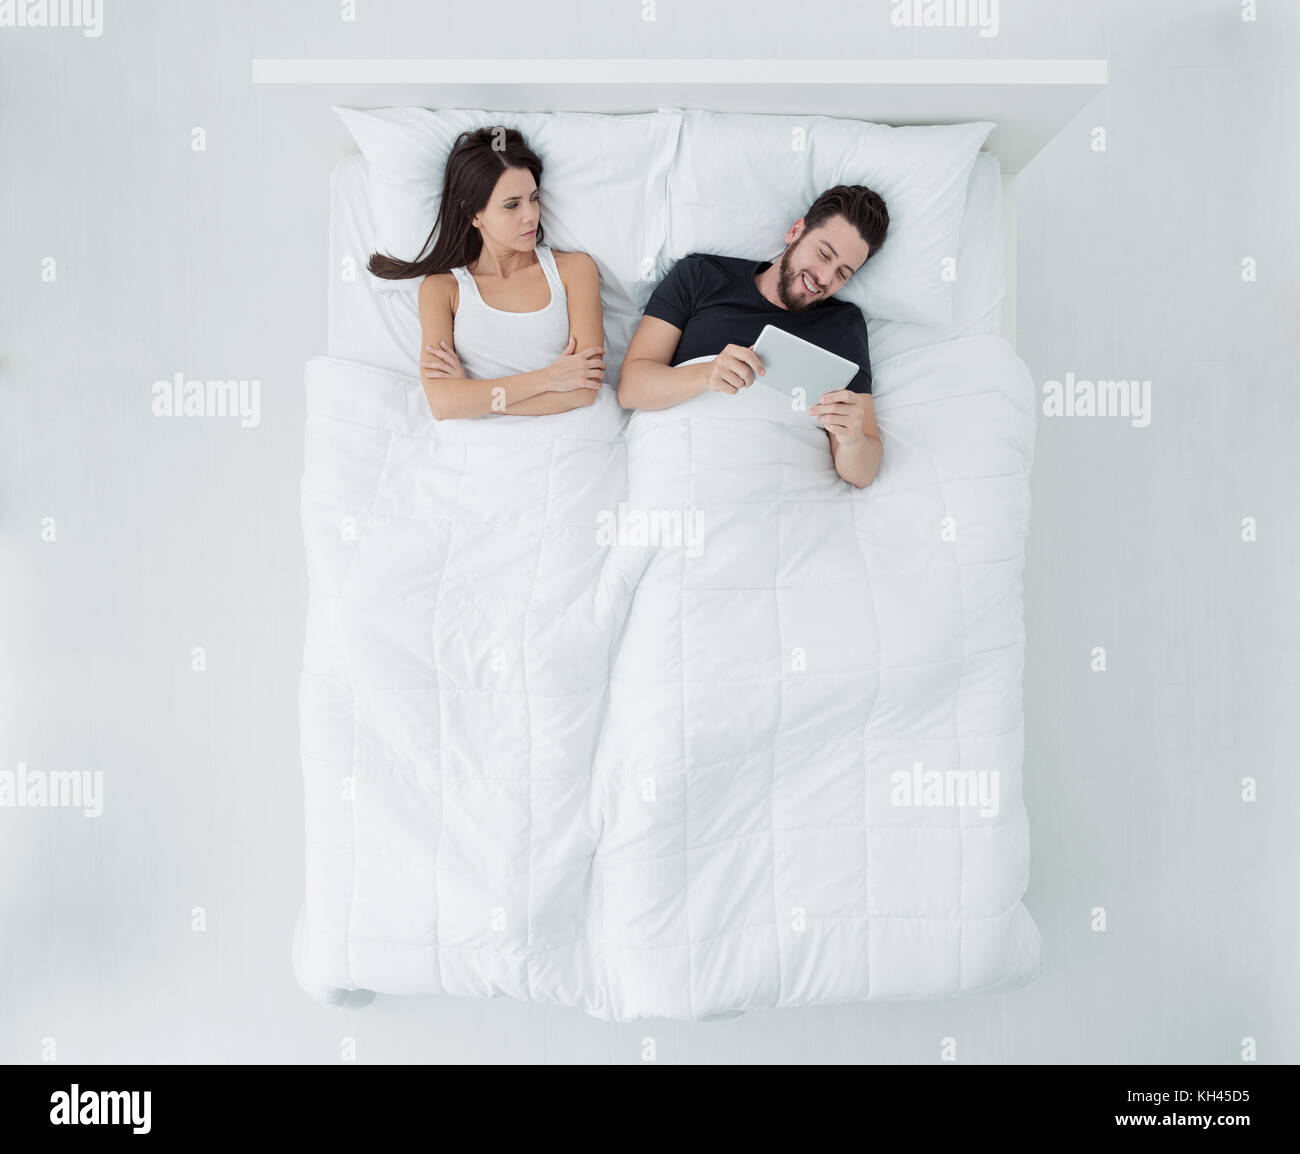 Paar im Bett, der Mann ist eine Verbindung mit einem Tablett und ignoriert seine Böse Freundin, Beziehung Schwierigkeiten, Ansicht von oben Stockfoto